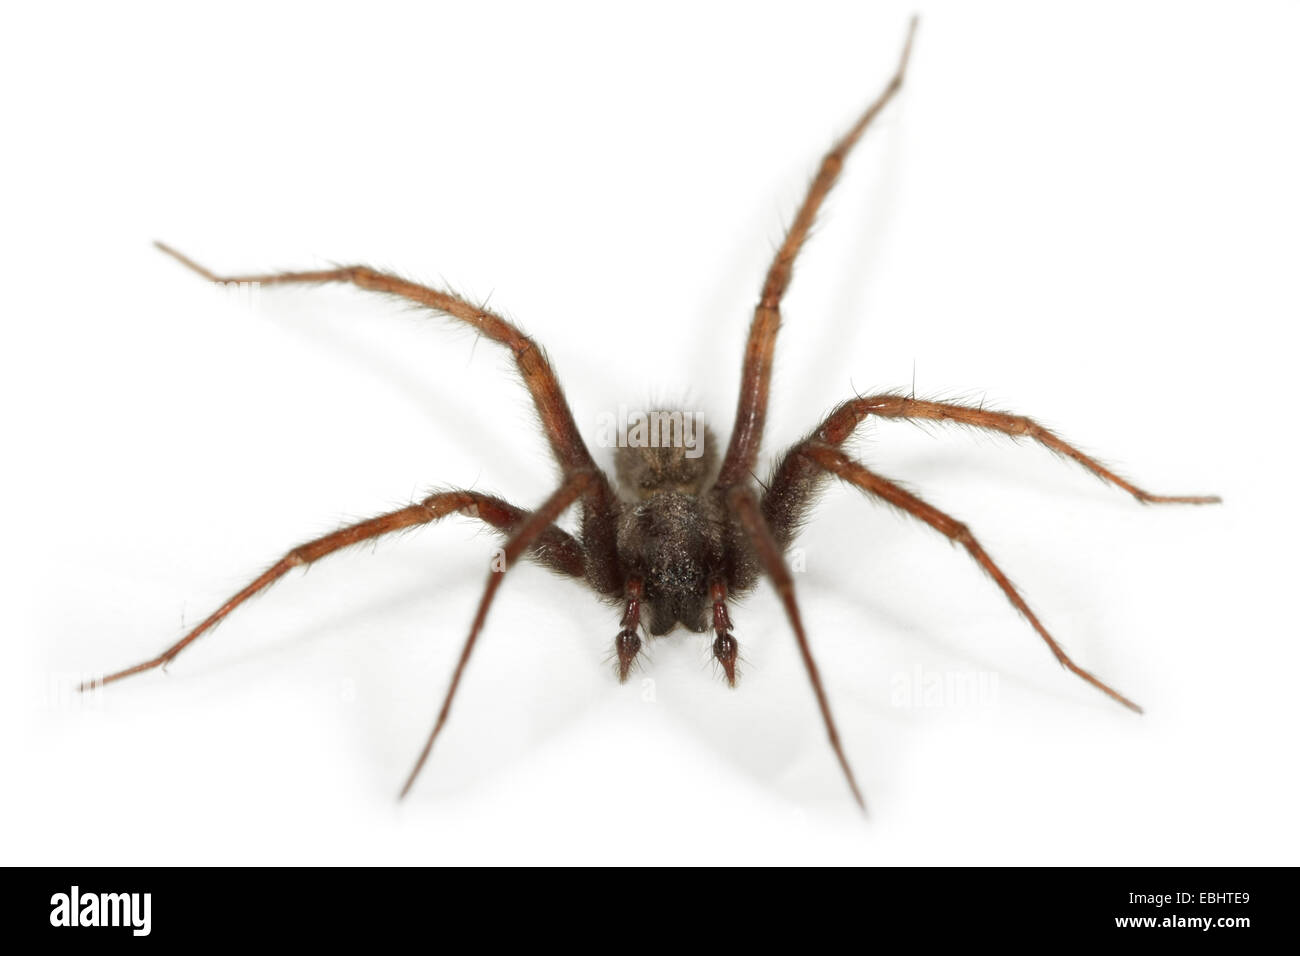 Ein männlicher gemeinsame Haus-Spider (Teganaria domestica), auf einem weißen Hintergrund, ein Teil der Familie Agelenidae - Trichter web Weber. Stockfoto